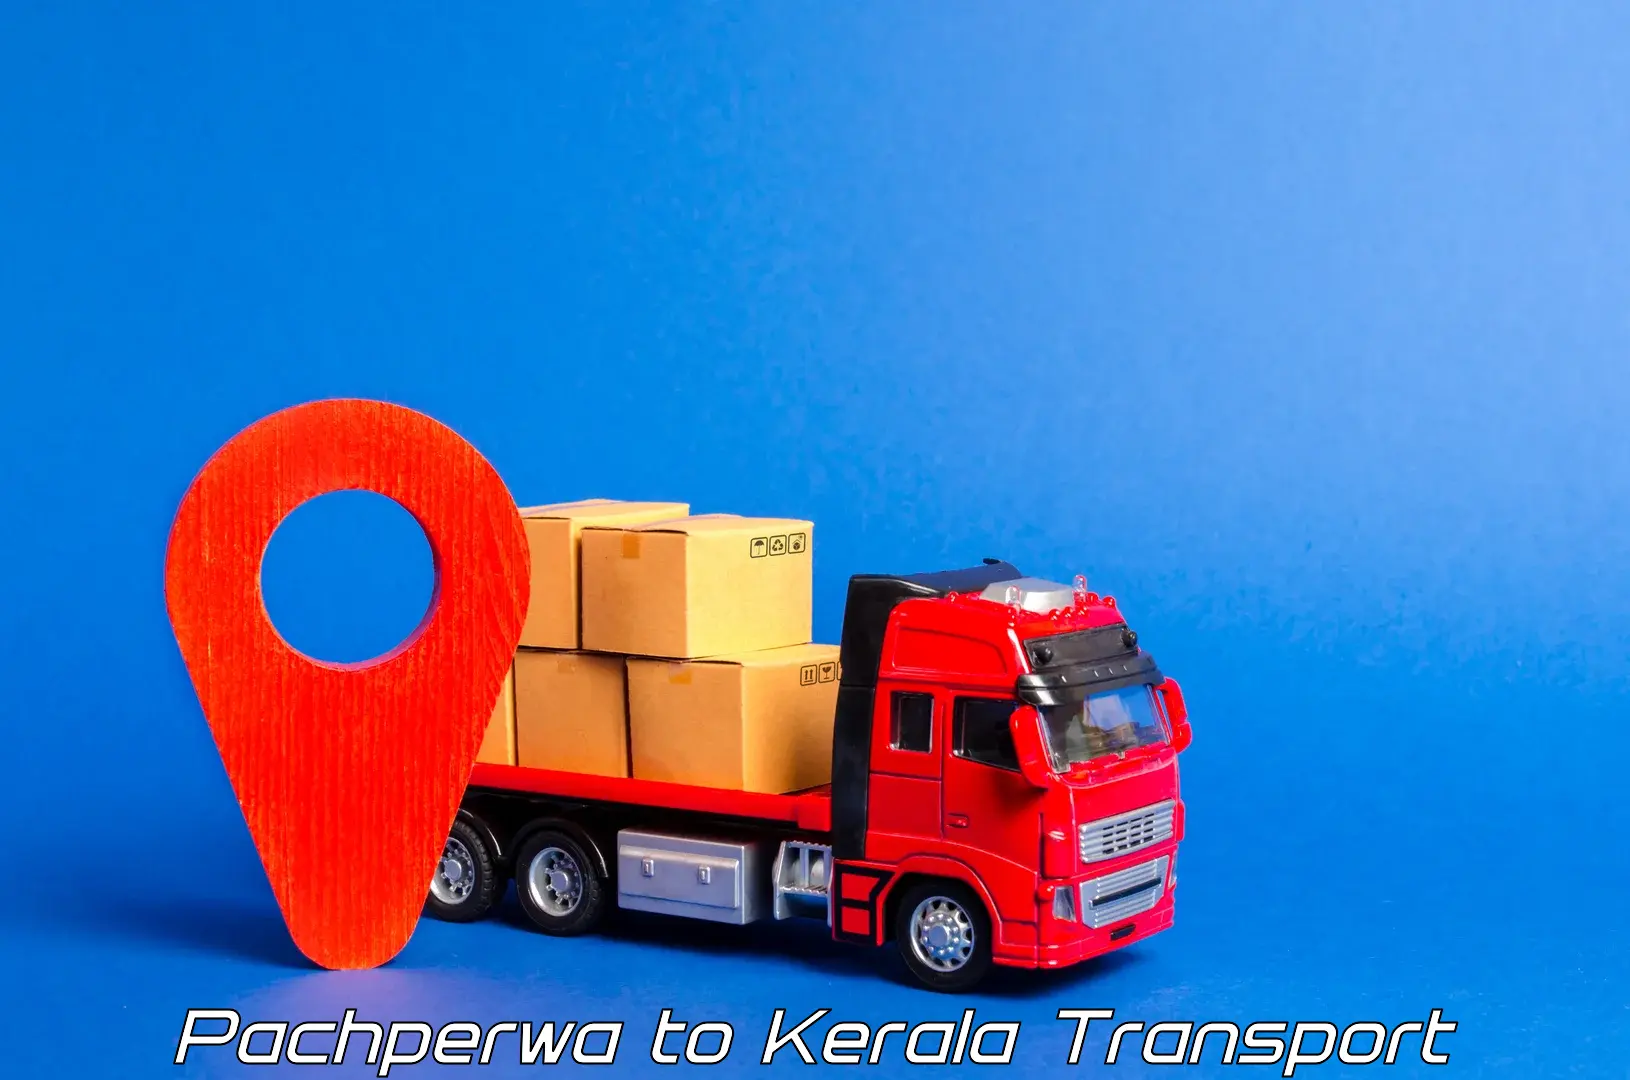 Goods transport services Pachperwa to Karimba